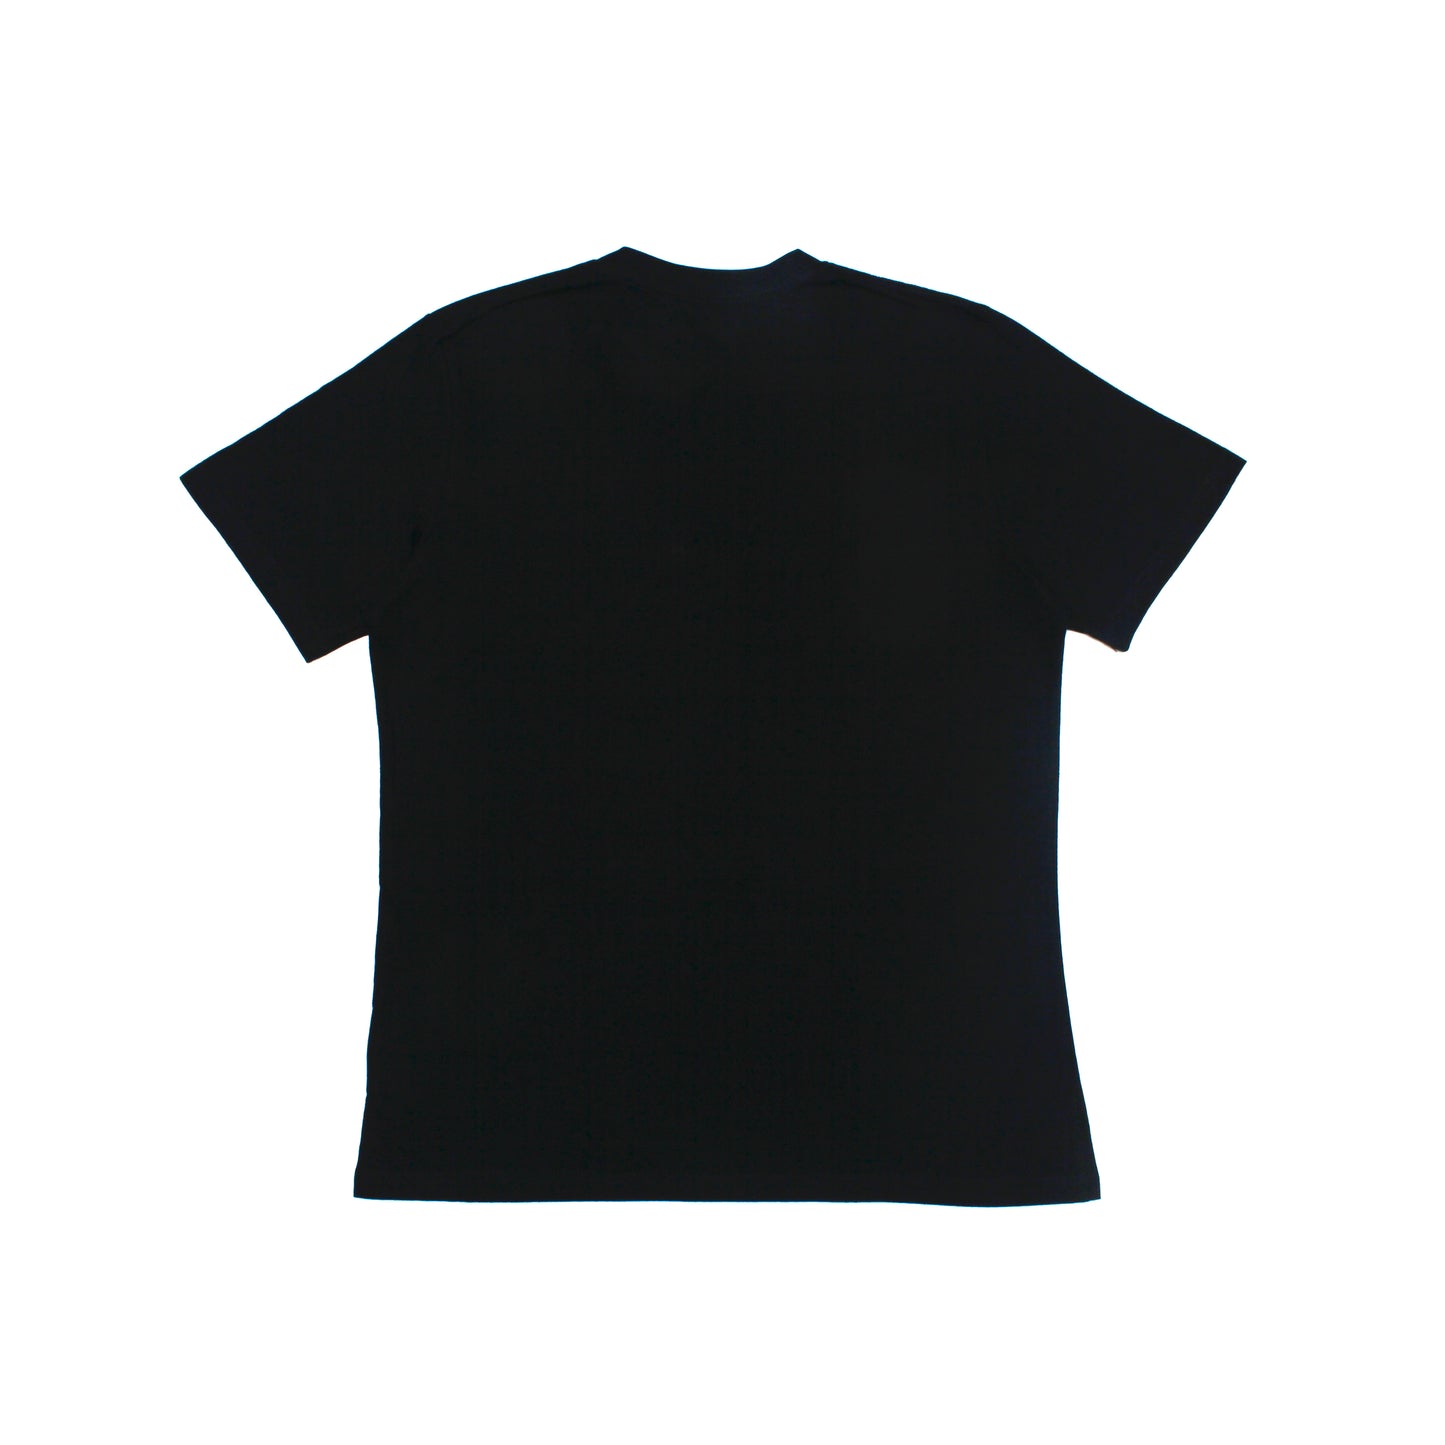 Sol Sol "Garden Mushroom" T-shirt - Black